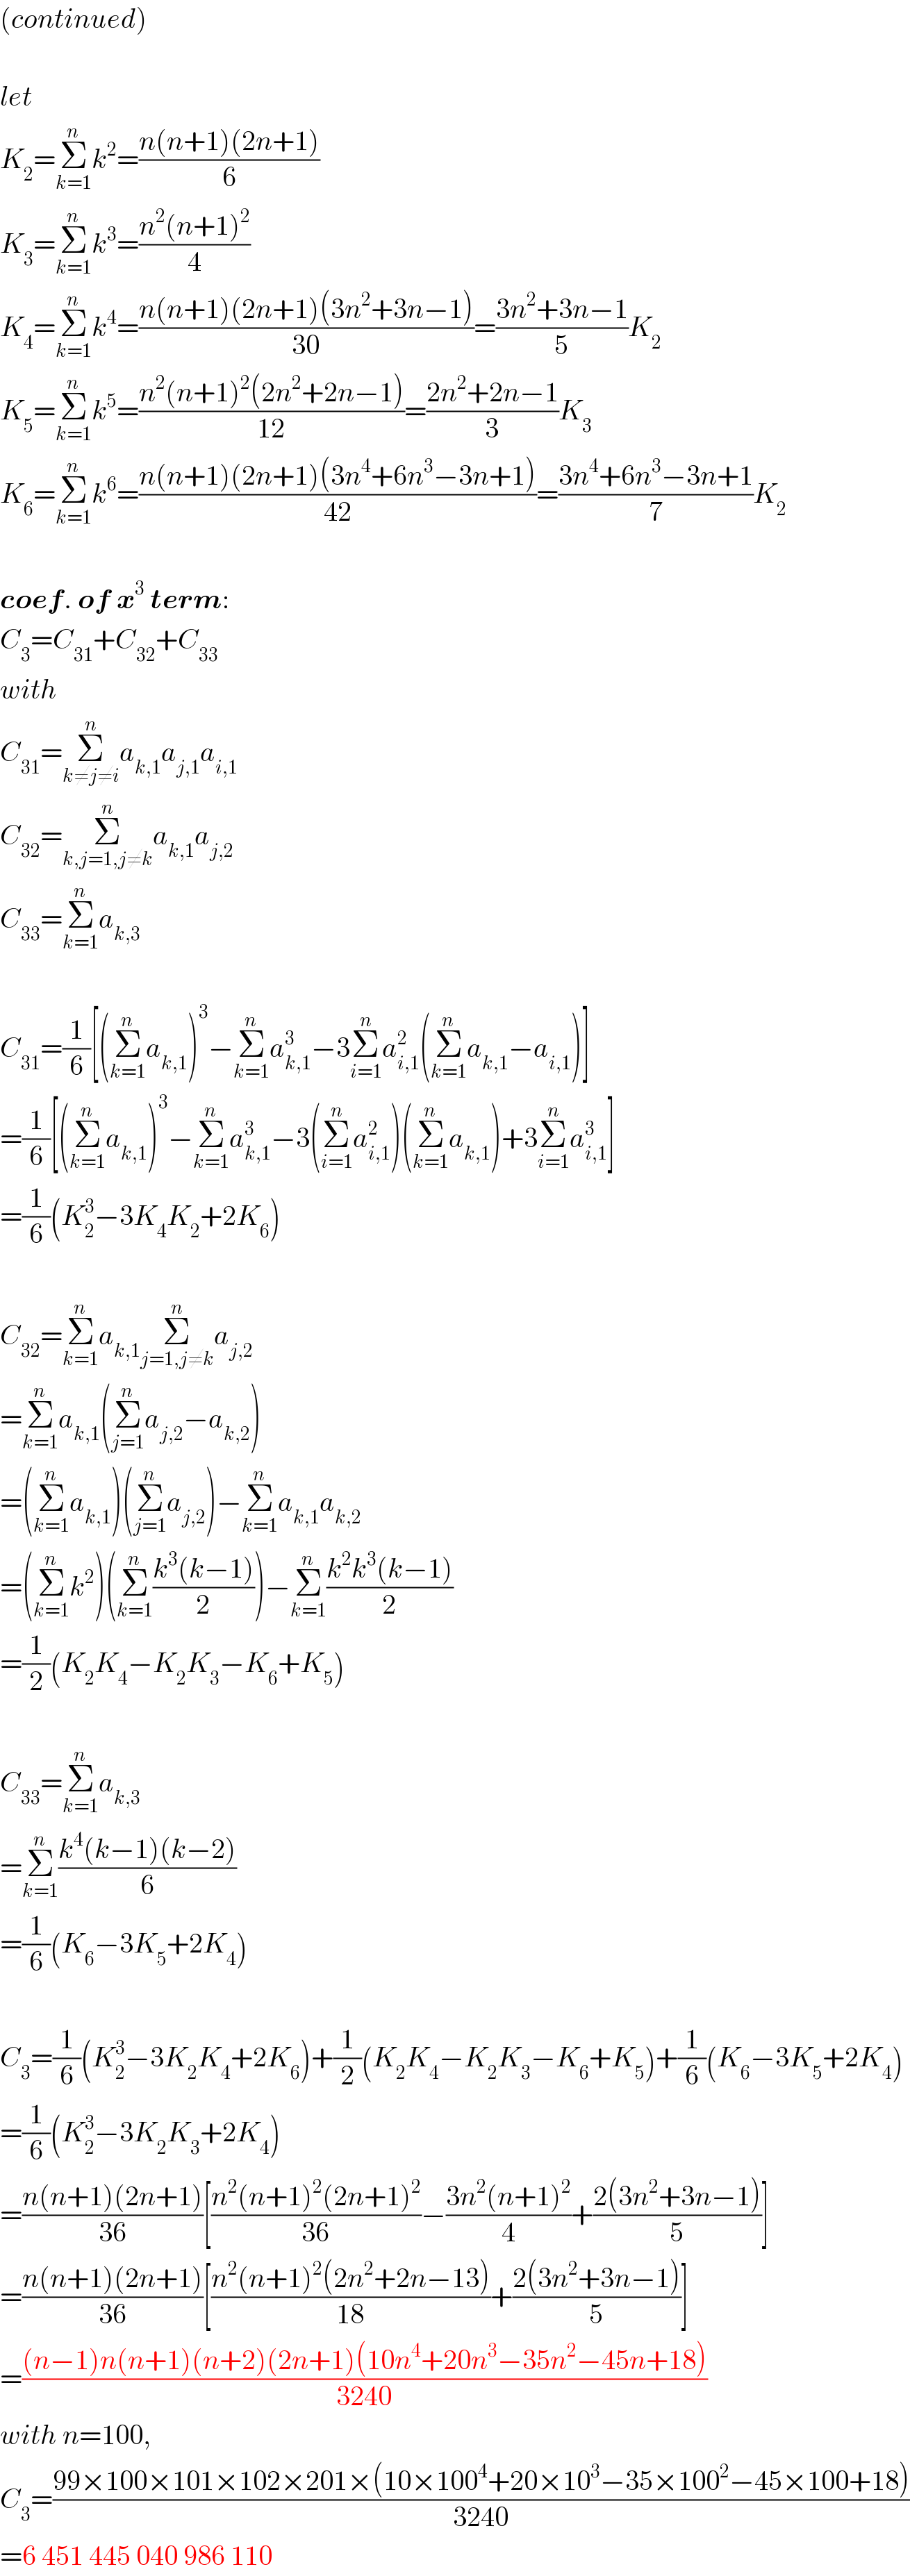 (continued)    let  K_2 =Σ_(k=1) ^n k^2 =((n(n+1)(2n+1))/6)  K_3 =Σ_(k=1) ^n k^3 =((n^2 (n+1)^2 )/4)  K_4 =Σ_(k=1) ^n k^4 =((n(n+1)(2n+1)(3n^2 +3n−1))/(30))=((3n^2 +3n−1)/5)K_2   K_5 =Σ_(k=1) ^n k^5 =((n^2 (n+1)^2 (2n^2 +2n−1))/(12))=((2n^2 +2n−1)/3)K_3   K_6 =Σ_(k=1) ^n k^6 =((n(n+1)(2n+1)(3n^4 +6n^3 −3n+1))/(42))=((3n^4 +6n^3 −3n+1)/7)K_2     coef. of x^3  term:  C_3 =C_(31) +C_(32) +C_(33)   with  C_(31) =Σ_(k≠j≠i) ^n a_(k,1) a_(j,1) a_(i,1)   C_(32) =Σ_(k,j=1,j≠k) ^n a_(k,1) a_(j,2)   C_(33) =Σ_(k=1) ^n a_(k,3)     C_(31) =(1/6)[(Σ_(k=1) ^n a_(k,1) )^3 −Σ_(k=1) ^n a_(k,1) ^3 −3Σ_(i=1) ^n a_(i,1) ^2 (Σ_(k=1) ^n a_(k,1) −a_(i,1) )]  =(1/6)[(Σ_(k=1) ^n a_(k,1) )^3 −Σ_(k=1) ^n a_(k,1) ^3 −3(Σ_(i=1) ^n a_(i,1) ^2 )(Σ_(k=1) ^n a_(k,1) )+3Σ_(i=1) ^n a_(i,1) ^3 ]  =(1/6)(K_2 ^3 −3K_4 K_2 +2K_6 )    C_(32) =Σ_(k=1) ^n a_(k,1) Σ_(j=1,j≠k) ^n a_(j,2)   =Σ_(k=1) ^n a_(k,1) (Σ_(j=1) ^n a_(j,2) −a_(k,2) )  =(Σ_(k=1) ^n a_(k,1) )(Σ_(j=1) ^n a_(j,2) )−Σ_(k=1) ^n a_(k,1) a_(k,2)   =(Σ_(k=1) ^n k^2 )(Σ_(k=1) ^n ((k^3 (k−1))/2))−Σ_(k=1) ^n ((k^2 k^3 (k−1))/2)  =(1/2)(K_2 K_4 −K_2 K_3 −K_6 +K_5 )    C_(33) =Σ_(k=1) ^n a_(k,3)   =Σ_(k=1) ^n ((k^4 (k−1)(k−2))/6)  =(1/6)(K_6 −3K_5 +2K_4 )    C_3 =(1/6)(K_2 ^3 −3K_2 K_4 +2K_6 )+(1/2)(K_2 K_4 −K_2 K_3 −K_6 +K_5 )+(1/6)(K_6 −3K_5 +2K_4 )  =(1/6)(K_2 ^3 −3K_2 K_3 +2K_4 )  =((n(n+1)(2n+1))/(36))[((n^2 (n+1)^2 (2n+1)^2 )/(36))−((3n^2 (n+1)^2 )/4)+((2(3n^2 +3n−1))/5)]  =((n(n+1)(2n+1))/(36))[((n^2 (n+1)^2 (2n^2 +2n−13))/(18))+((2(3n^2 +3n−1))/5)]  =(((n−1)n(n+1)(n+2)(2n+1)(10n^4 +20n^3 −35n^2 −45n+18))/(3240))  with n=100,  C_3 =((99×100×101×102×201×(10×100^4 +20×10^3 −35×100^2 −45×100+18))/(3240))  =6 451 445 040 986 110  